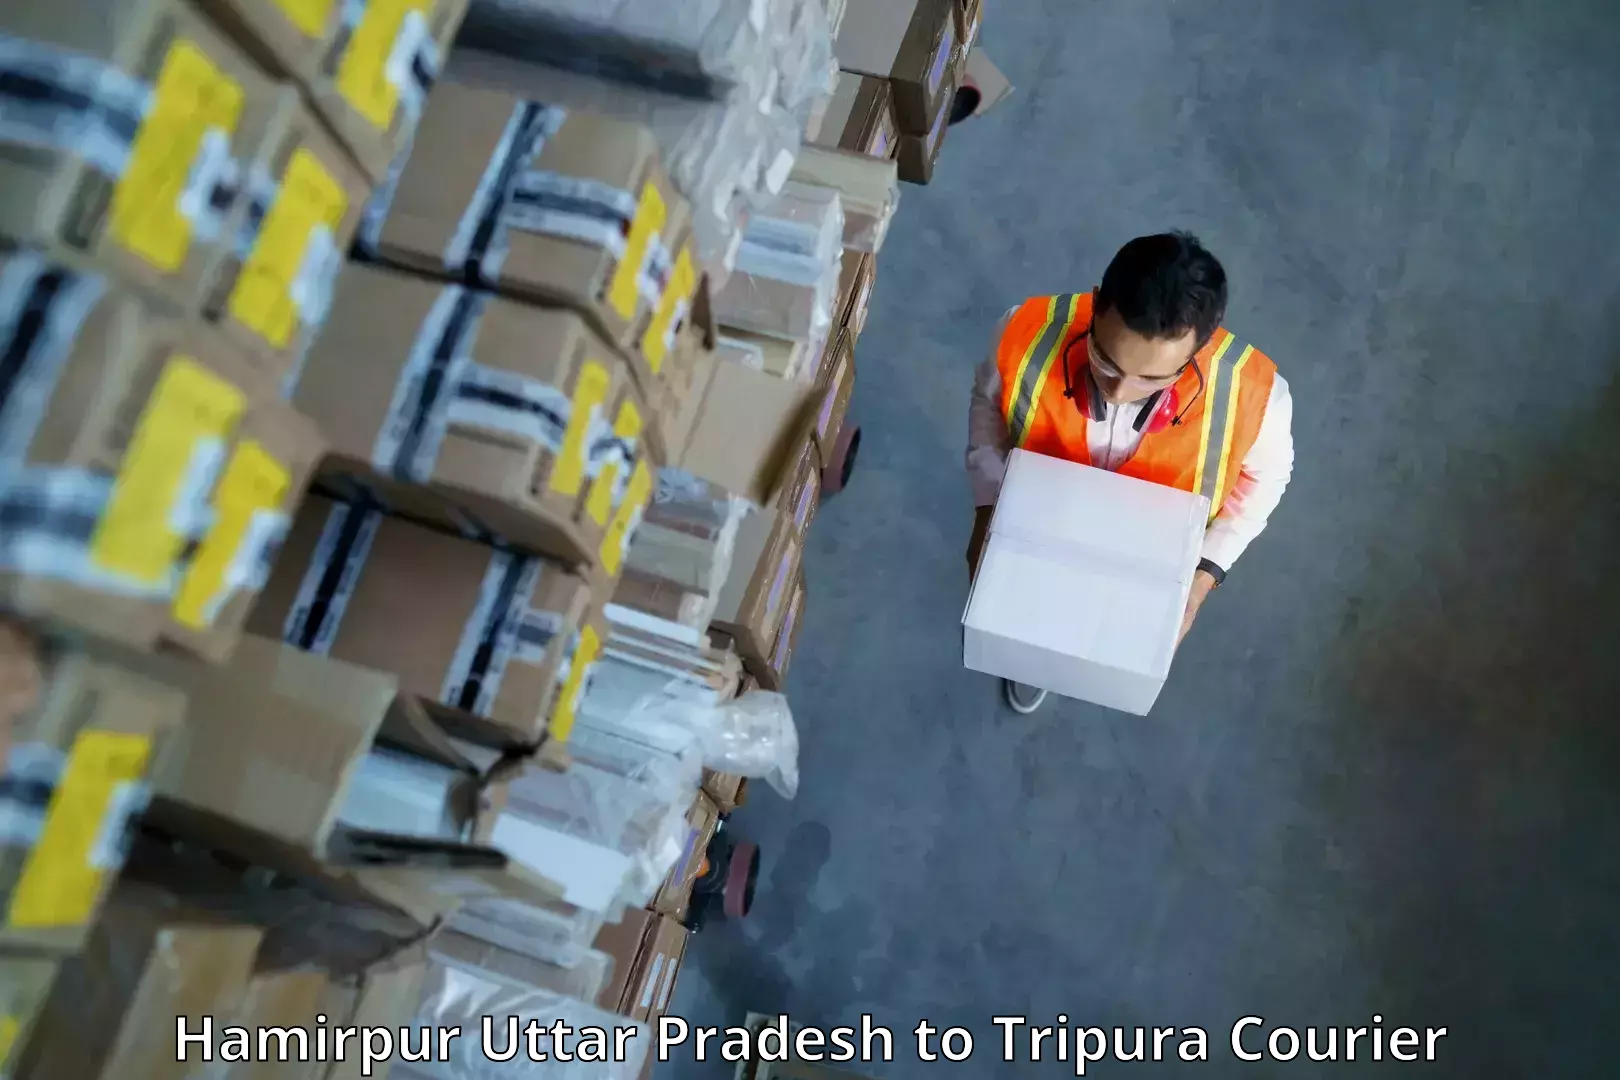 Weekend courier service Hamirpur Uttar Pradesh to Tripura